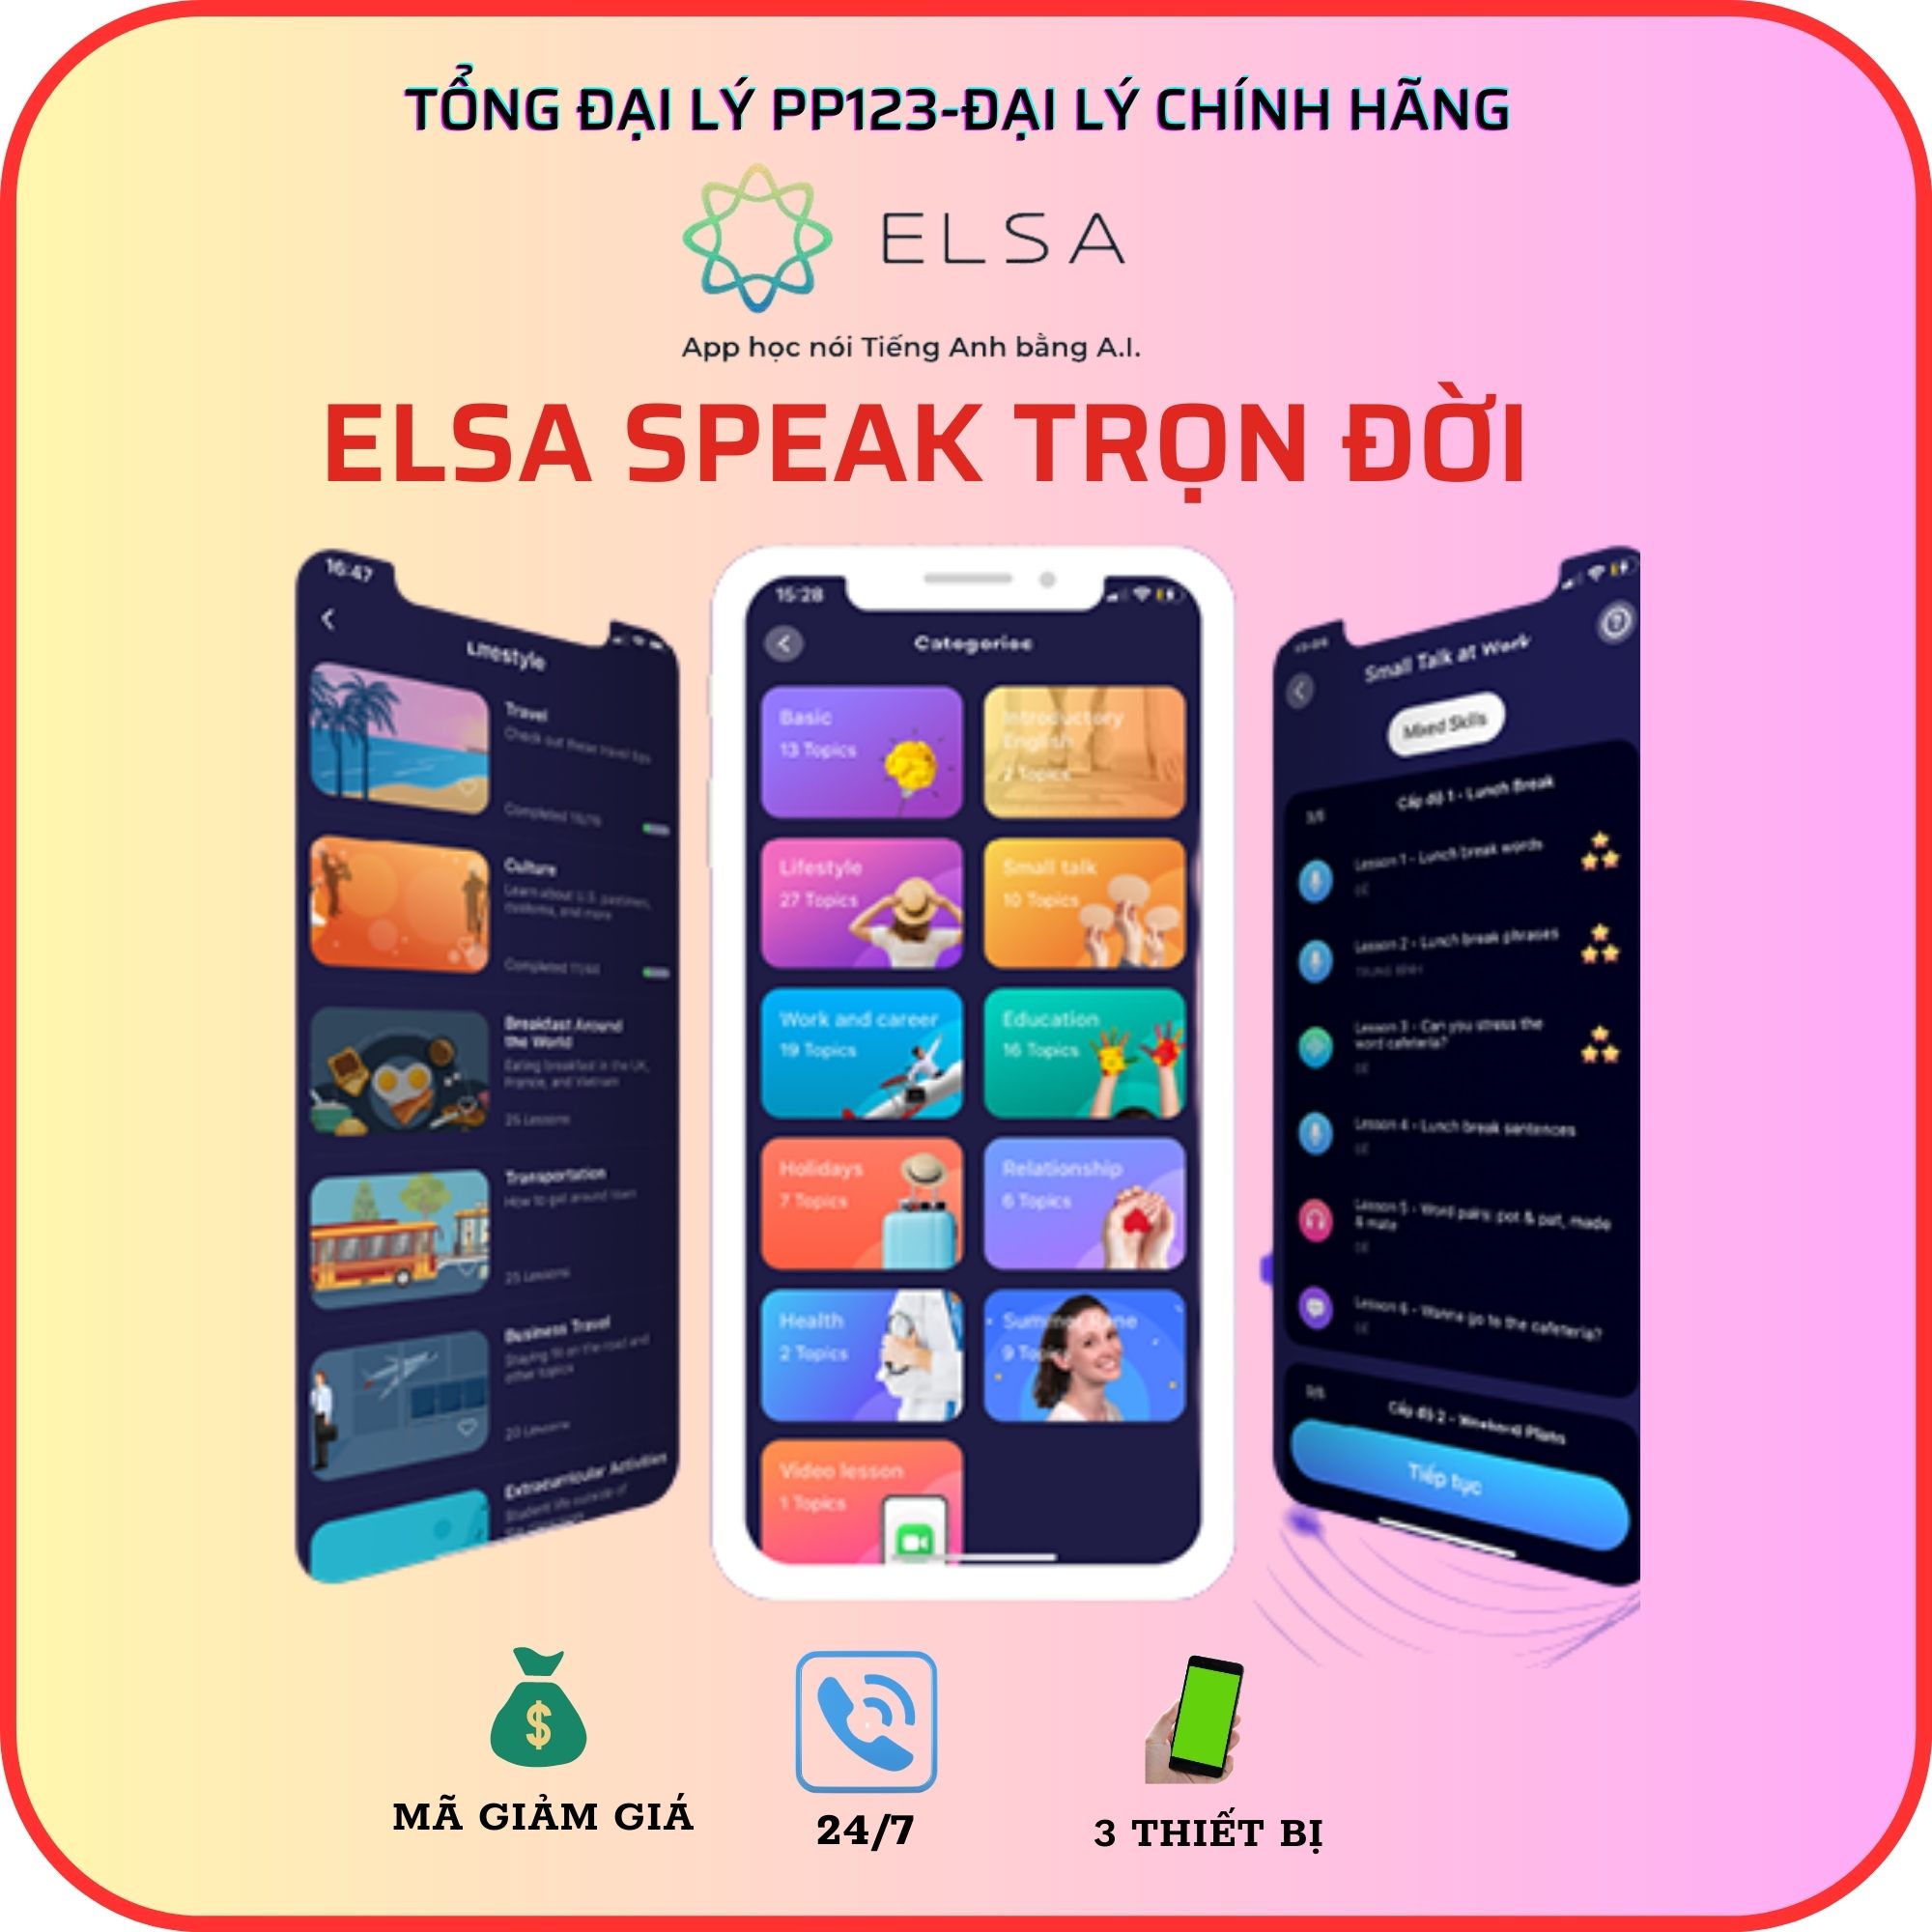 ELSA SPEAK Pro trọn đời  - App học tiếng Anh online chuẩn bản ngữ